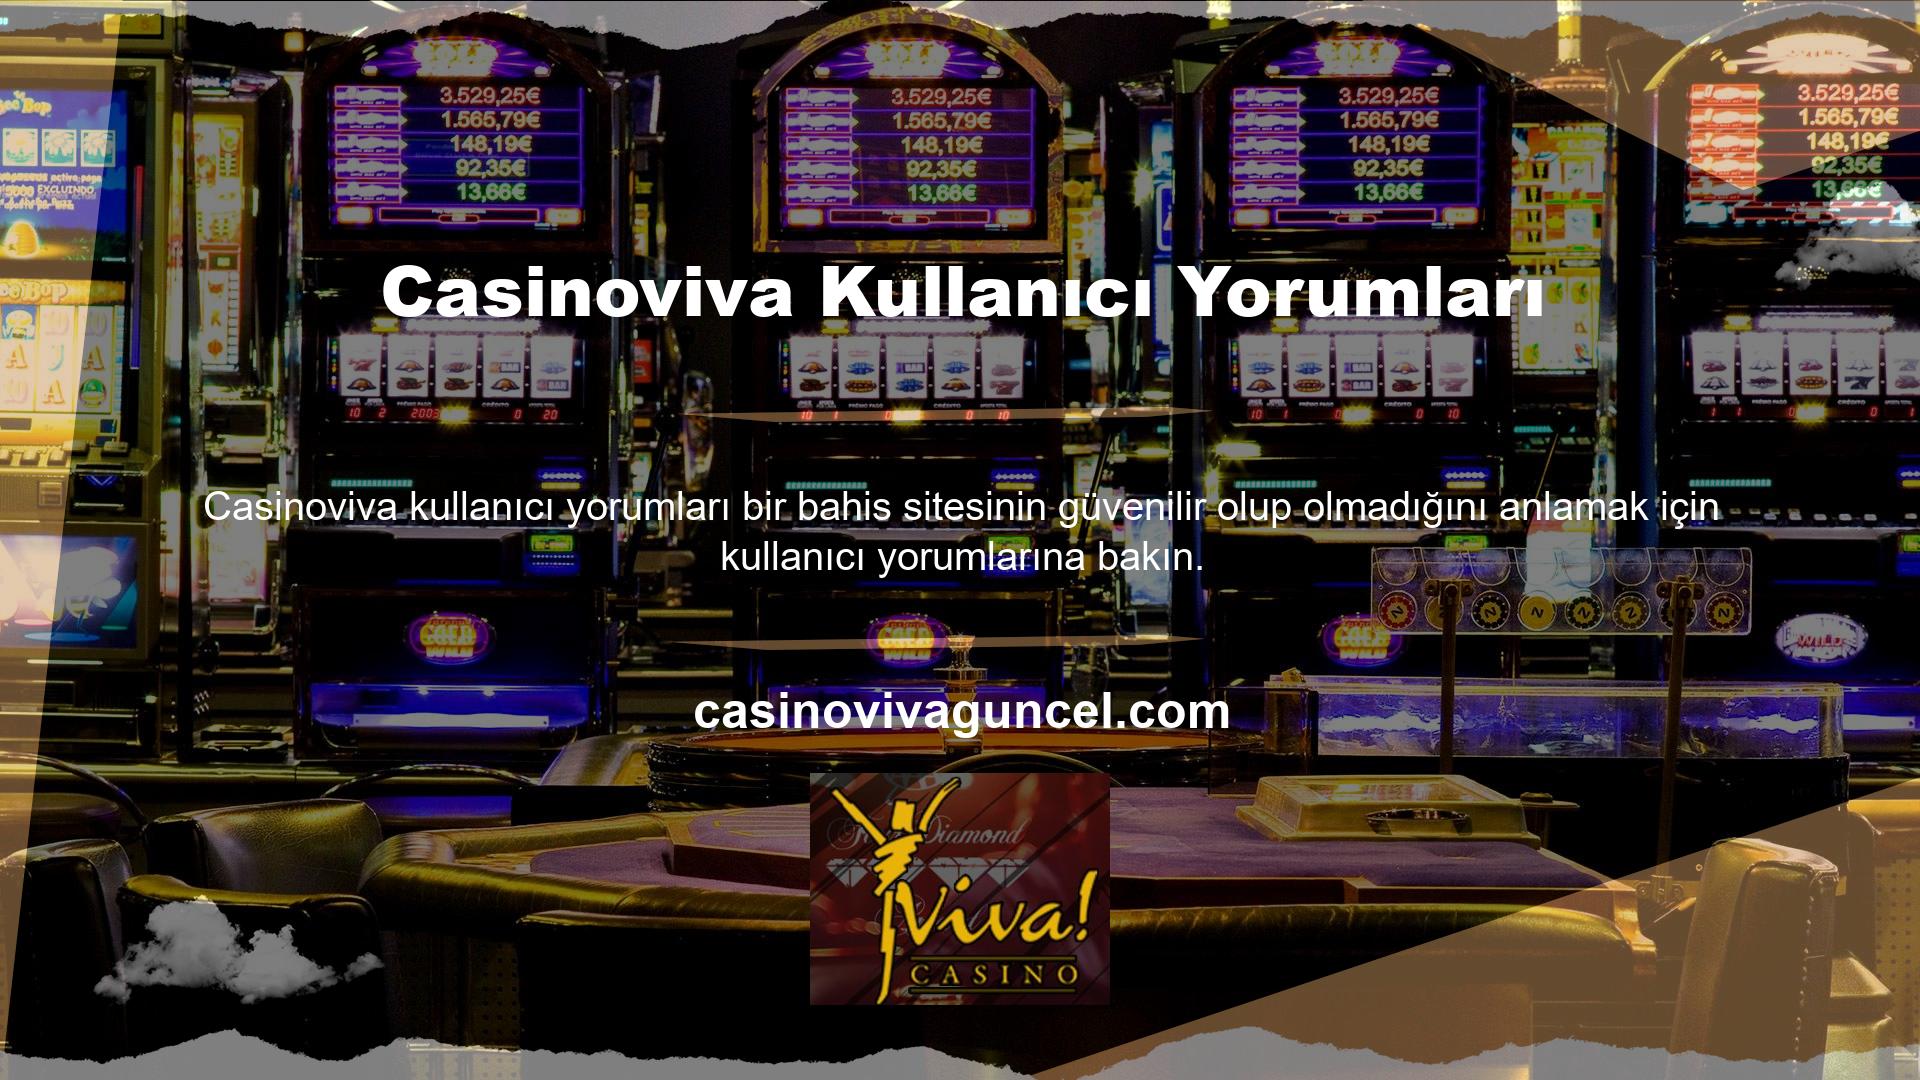 Casinoviva güvenebilir misin? Soruları yanıtlayarak üyelerin yorumlarını özelleştirmelerine yardımcı olun